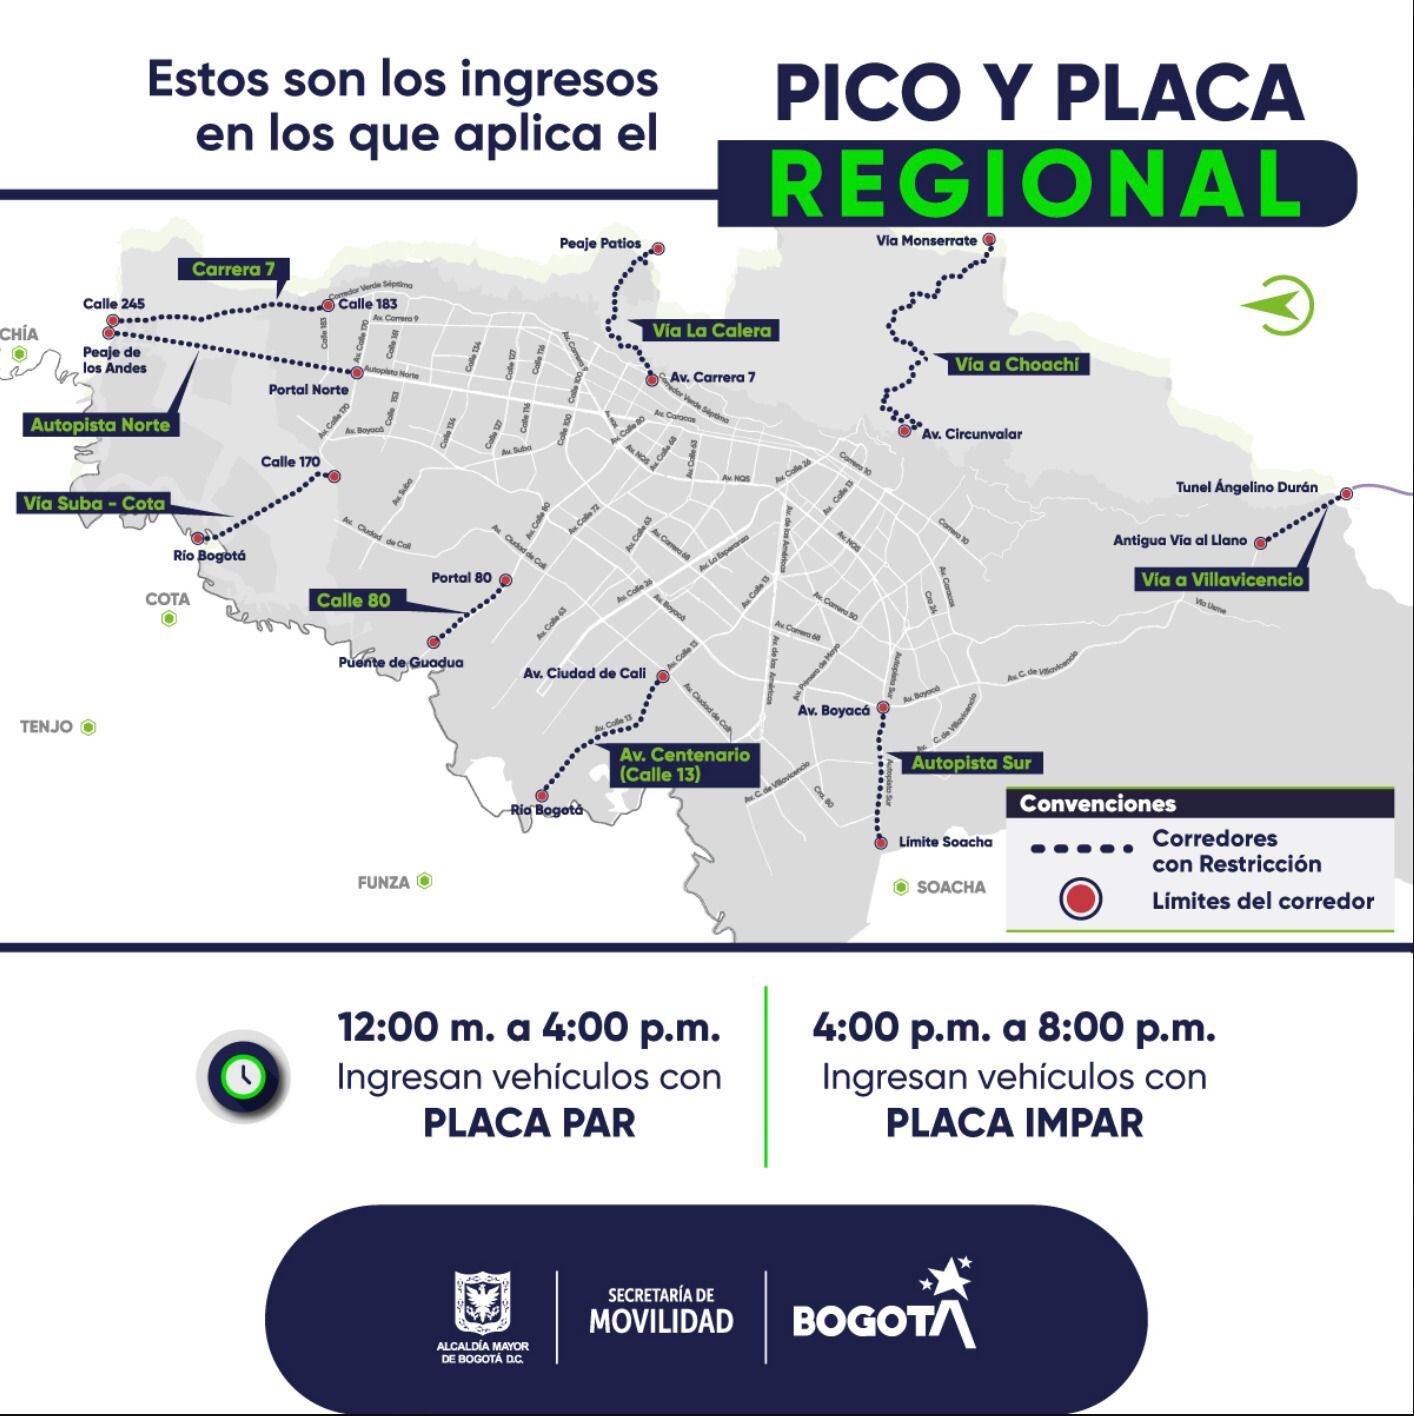 El Pico y placa regional se llevará a cabo el domingo 31 de marzo - crédito secretaría de Movilidad de Bogotá